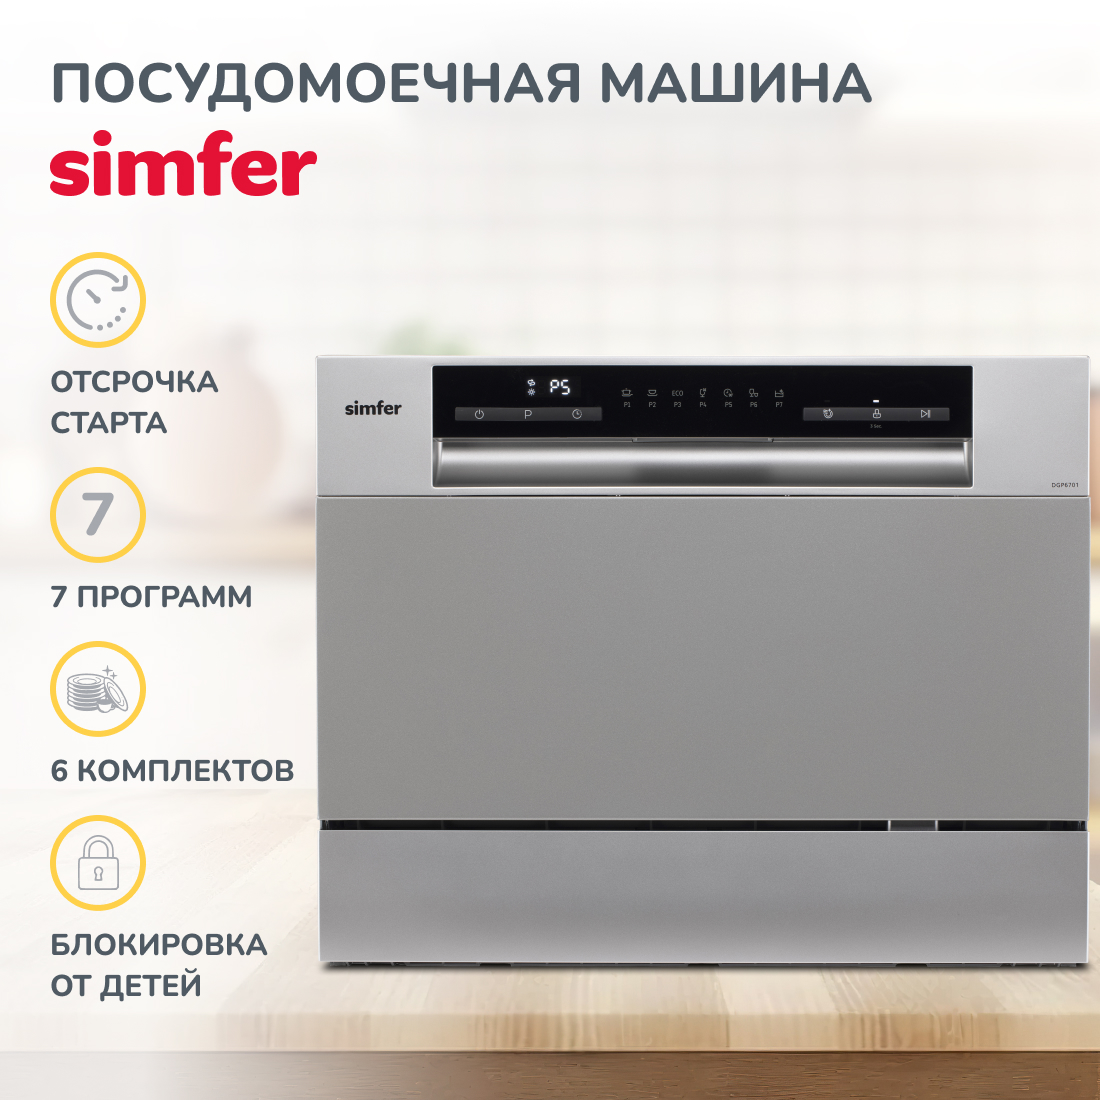 Настольная посудомоечная машина Simfer DGP6701 посудомоечная машина gorenje gv52041